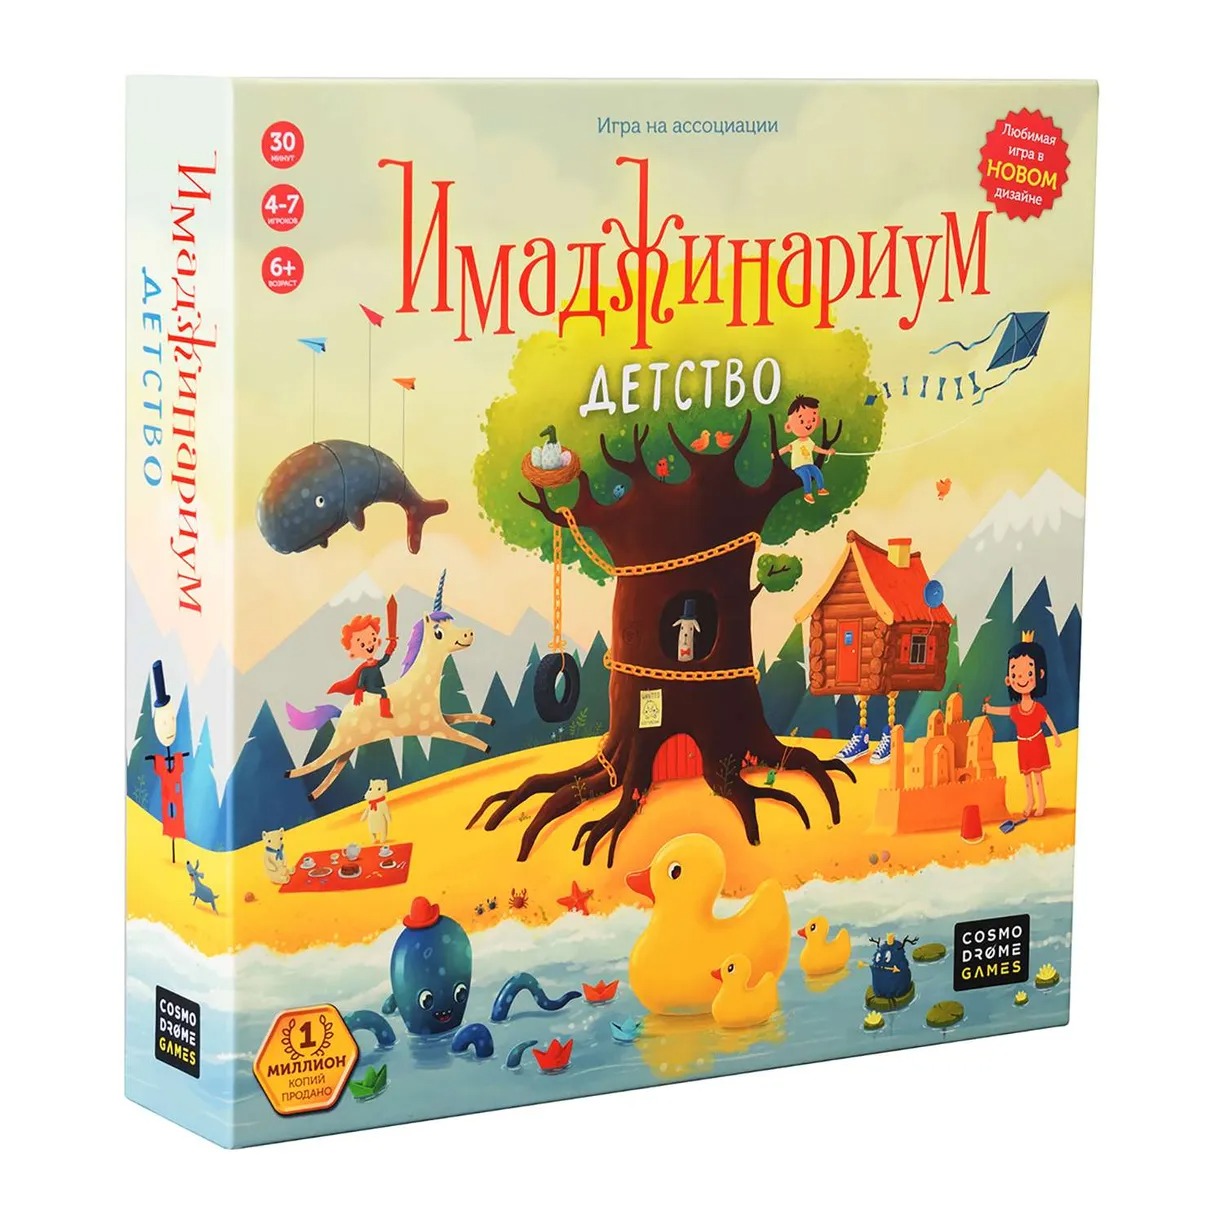 Cosmodrome Games - купить настольная игра Имаджинариум: Детство, цены в Москве на Мегамаркет